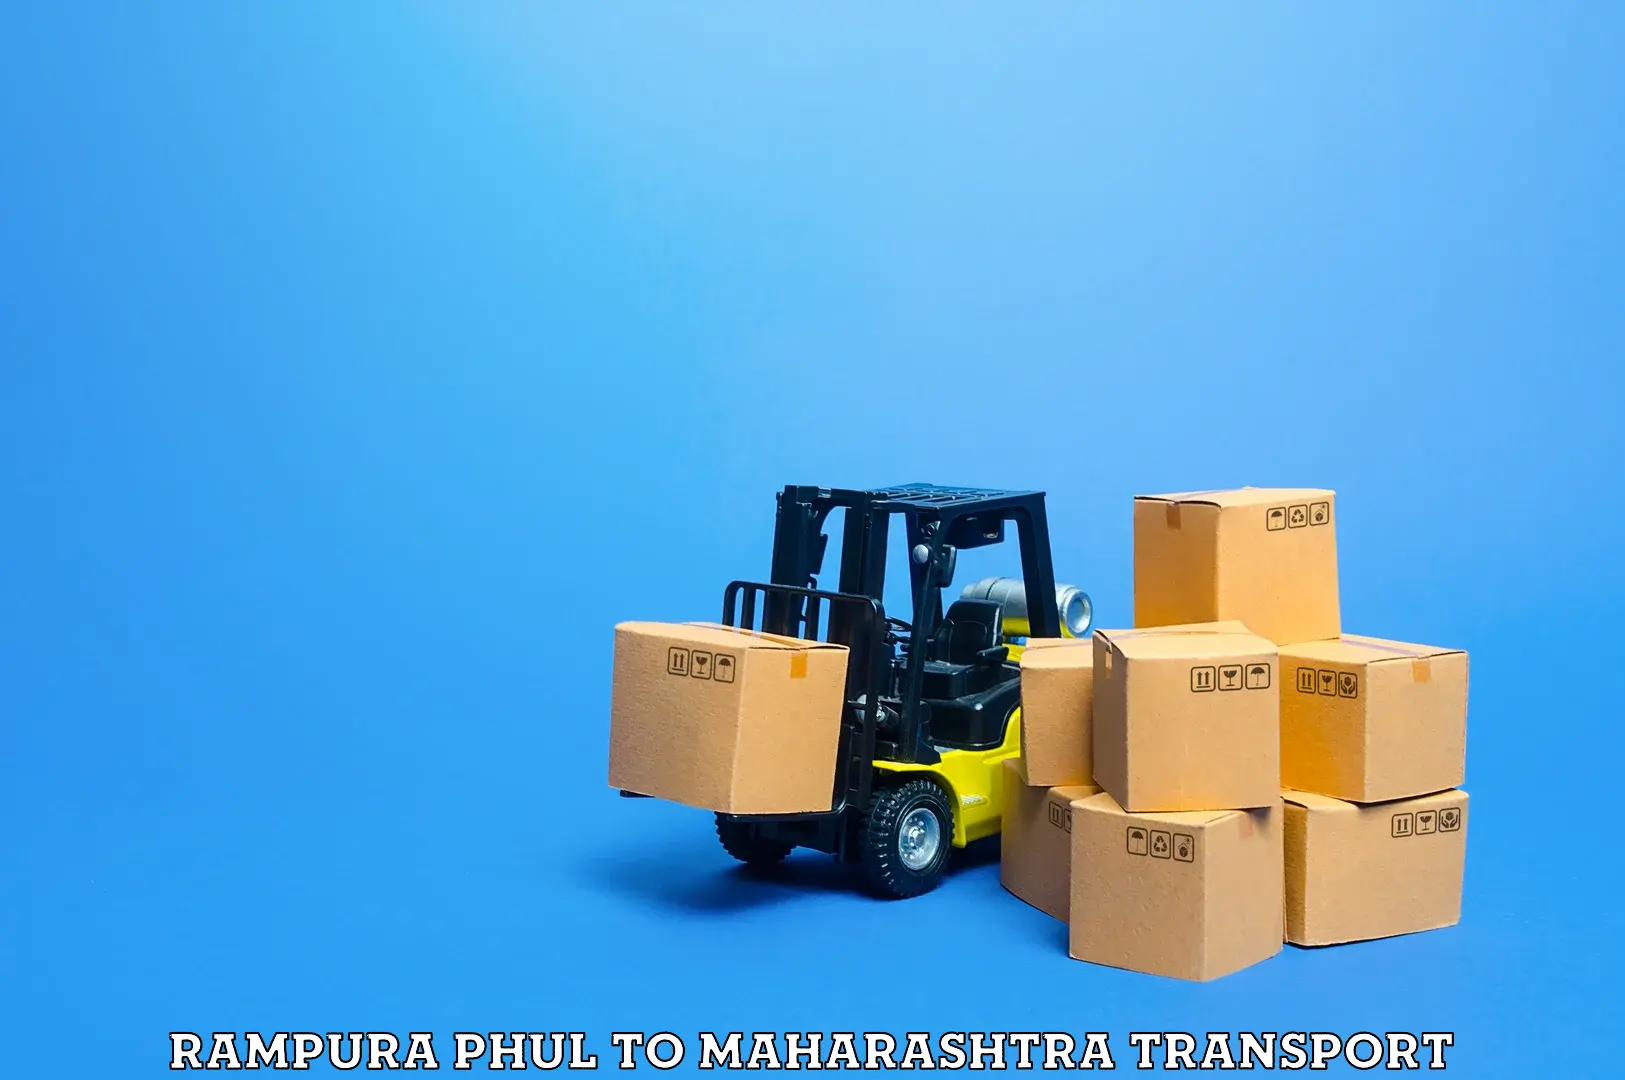 Daily transport service Rampura Phul to Maharashtra